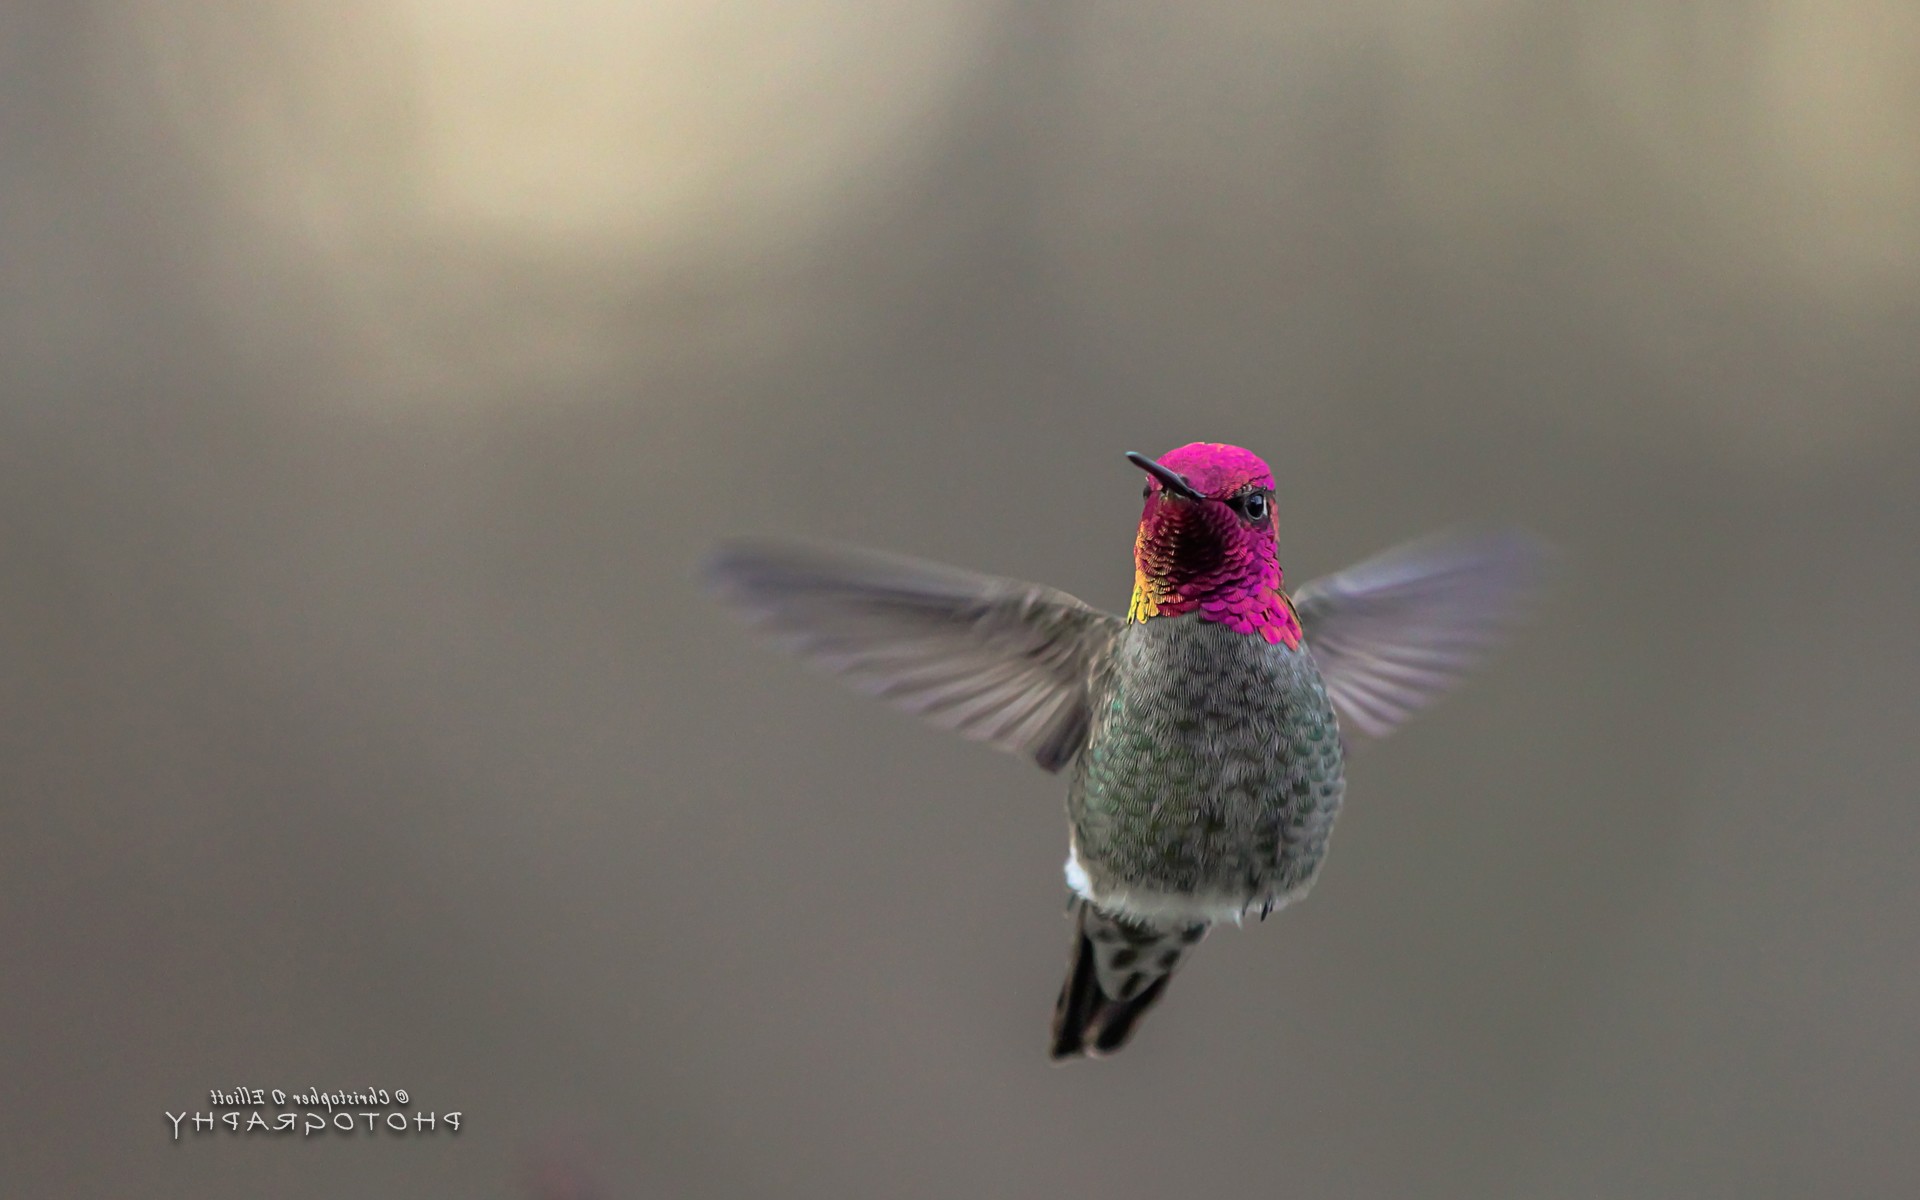 Полет маленькой птички колибри